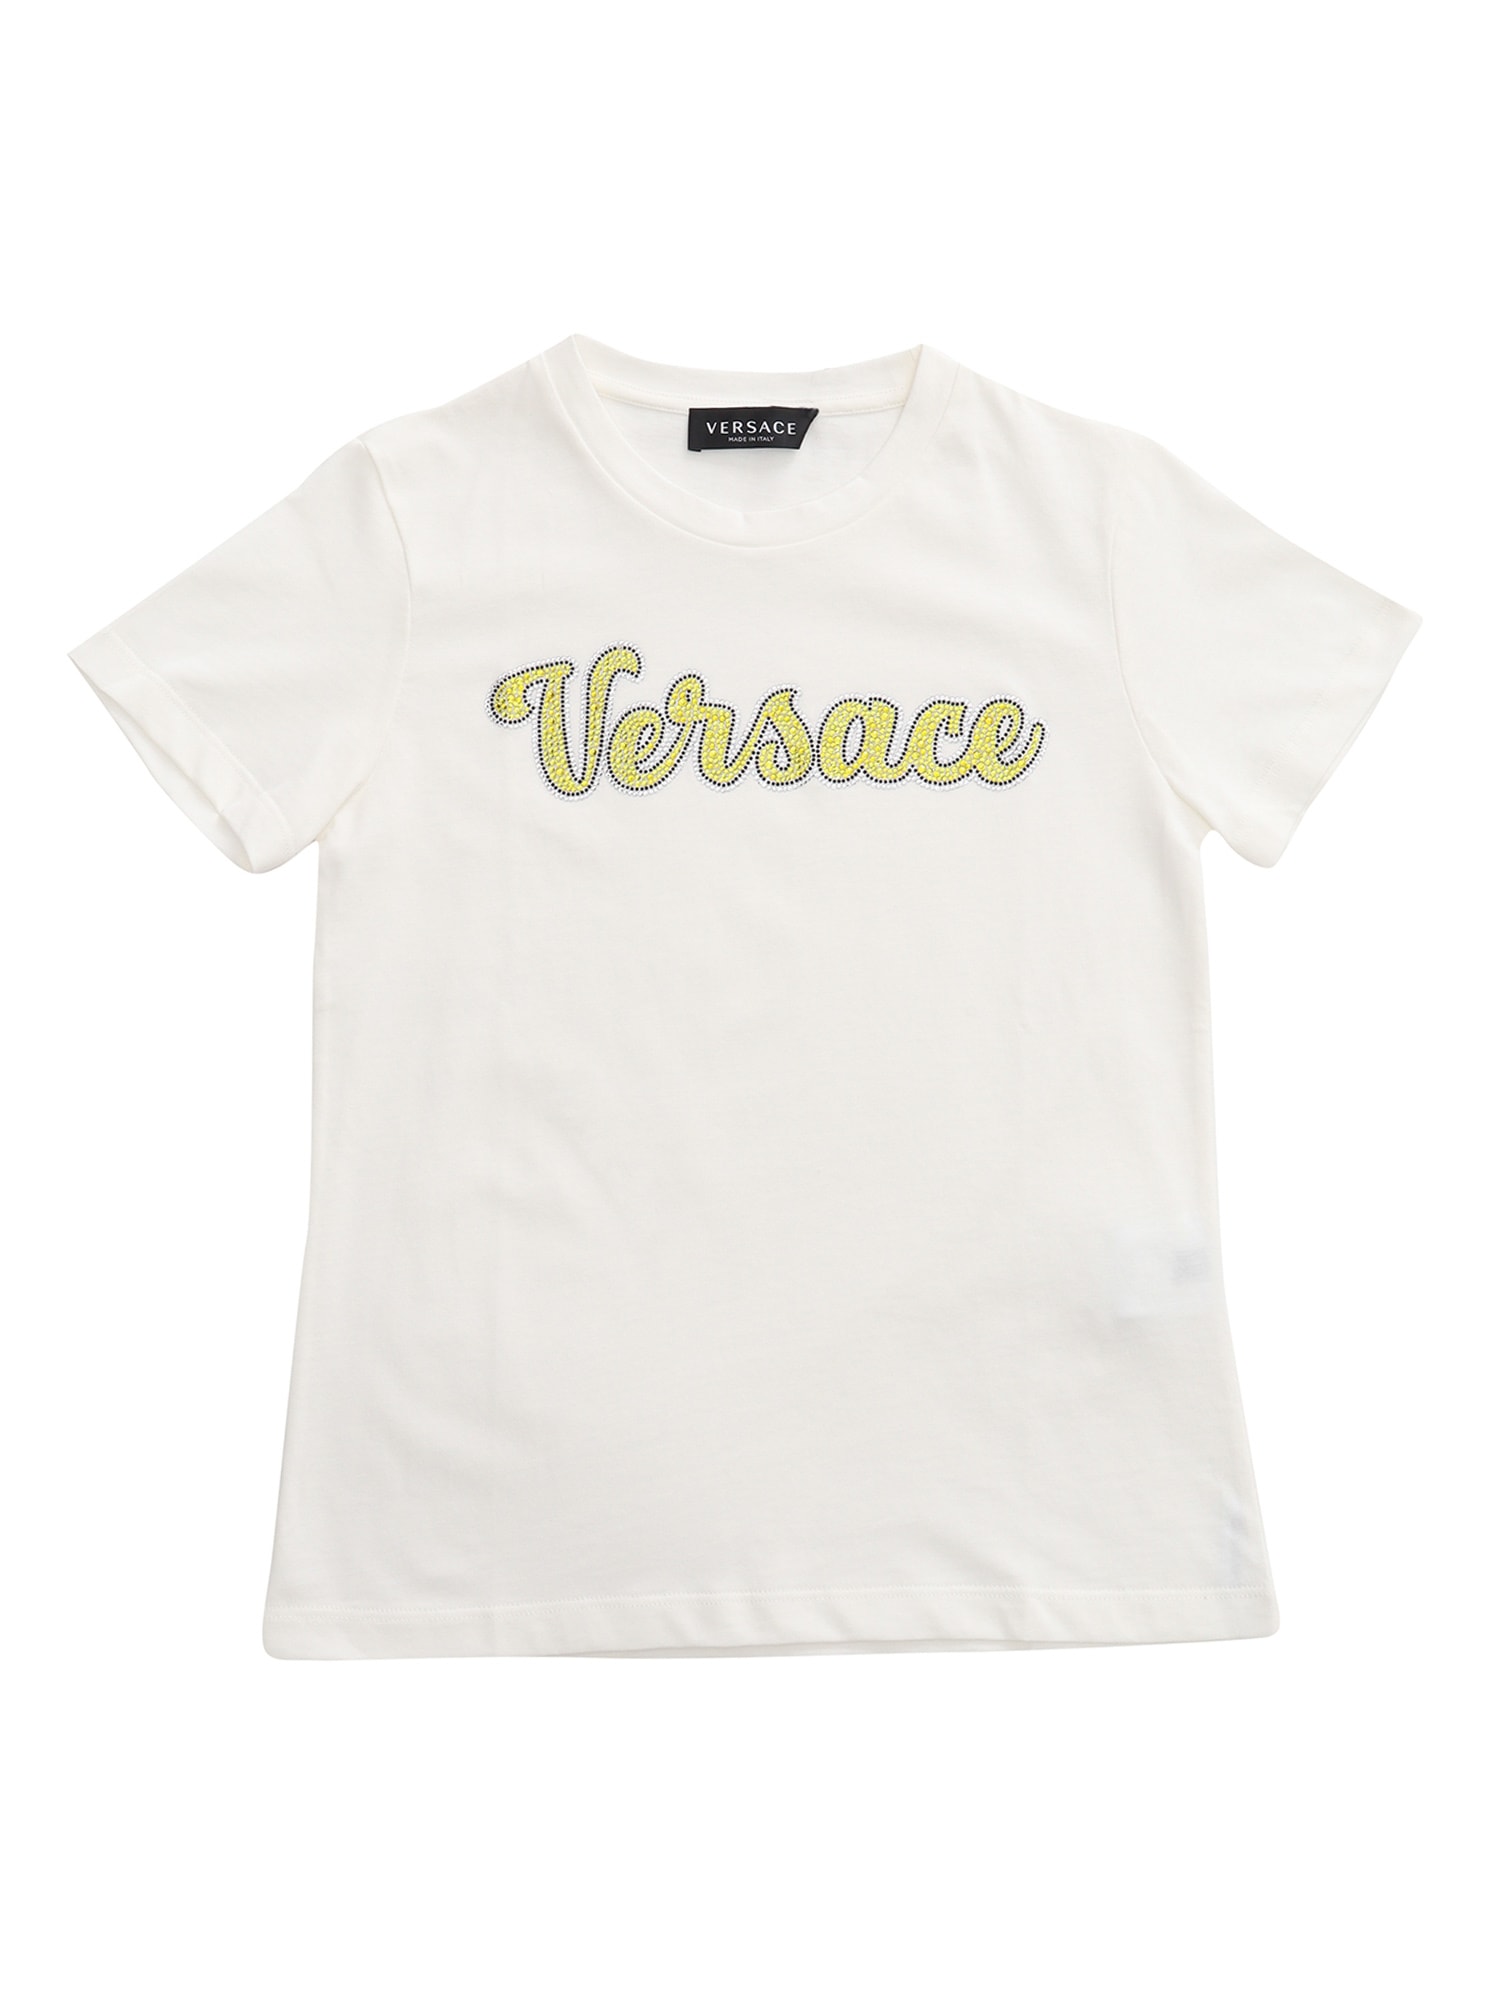 Versace Rhinestone Logo T-shirt